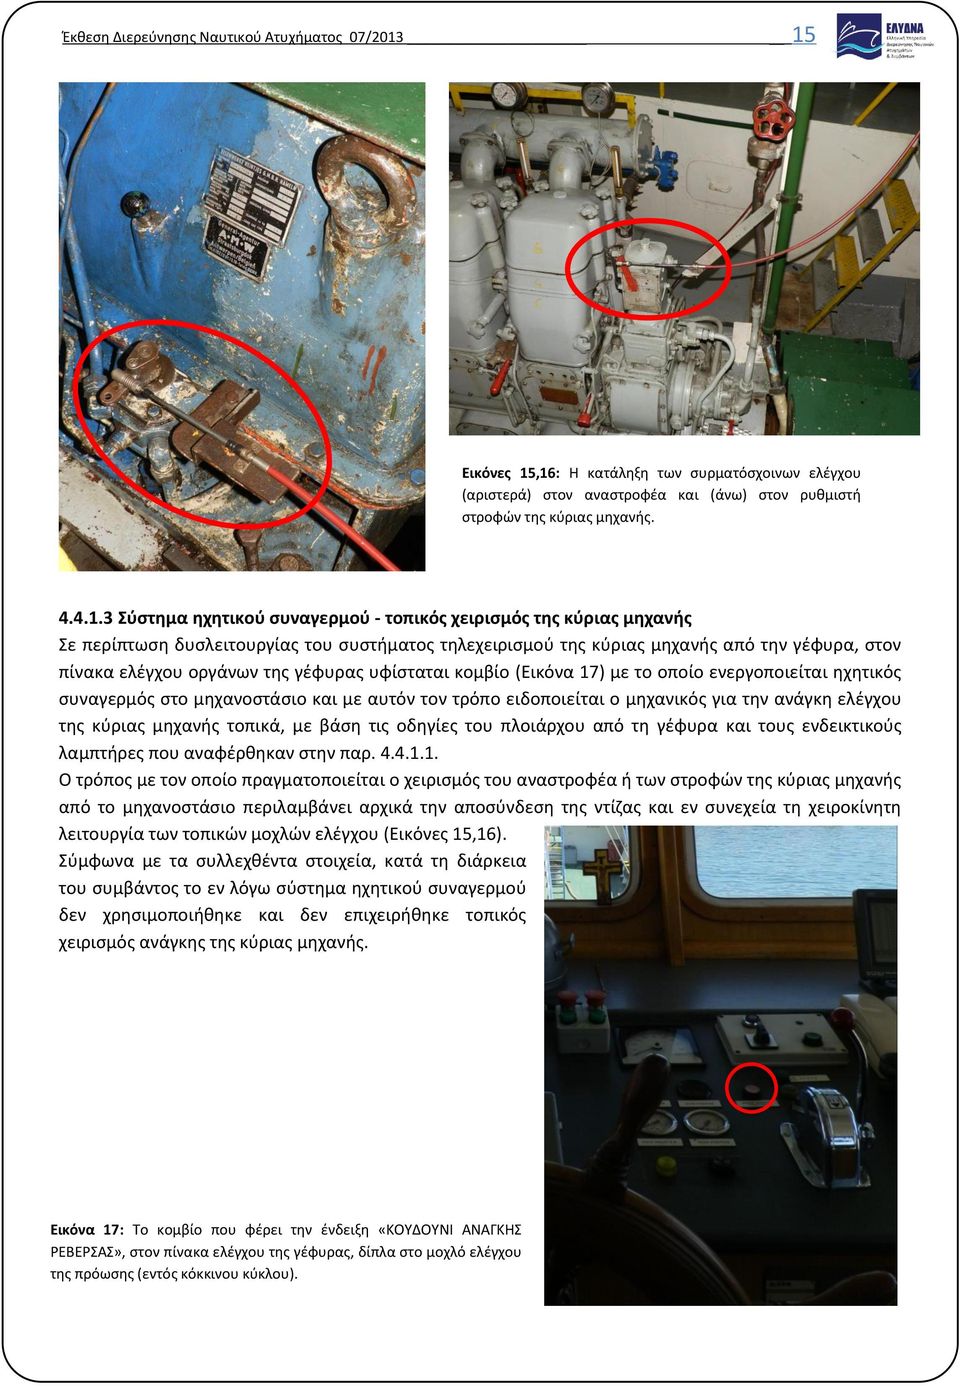 κύριας μηχανής Σε περίπτωση δυσλειτουργίας του συστήματος τηλεχειρισμού της κύριας μηχανής από την γέφυρα, στον πίνακα ελέγχου οργάνων της γέφυρας υφίσταται κομβίο (Εικόνα 17) με το οποίο